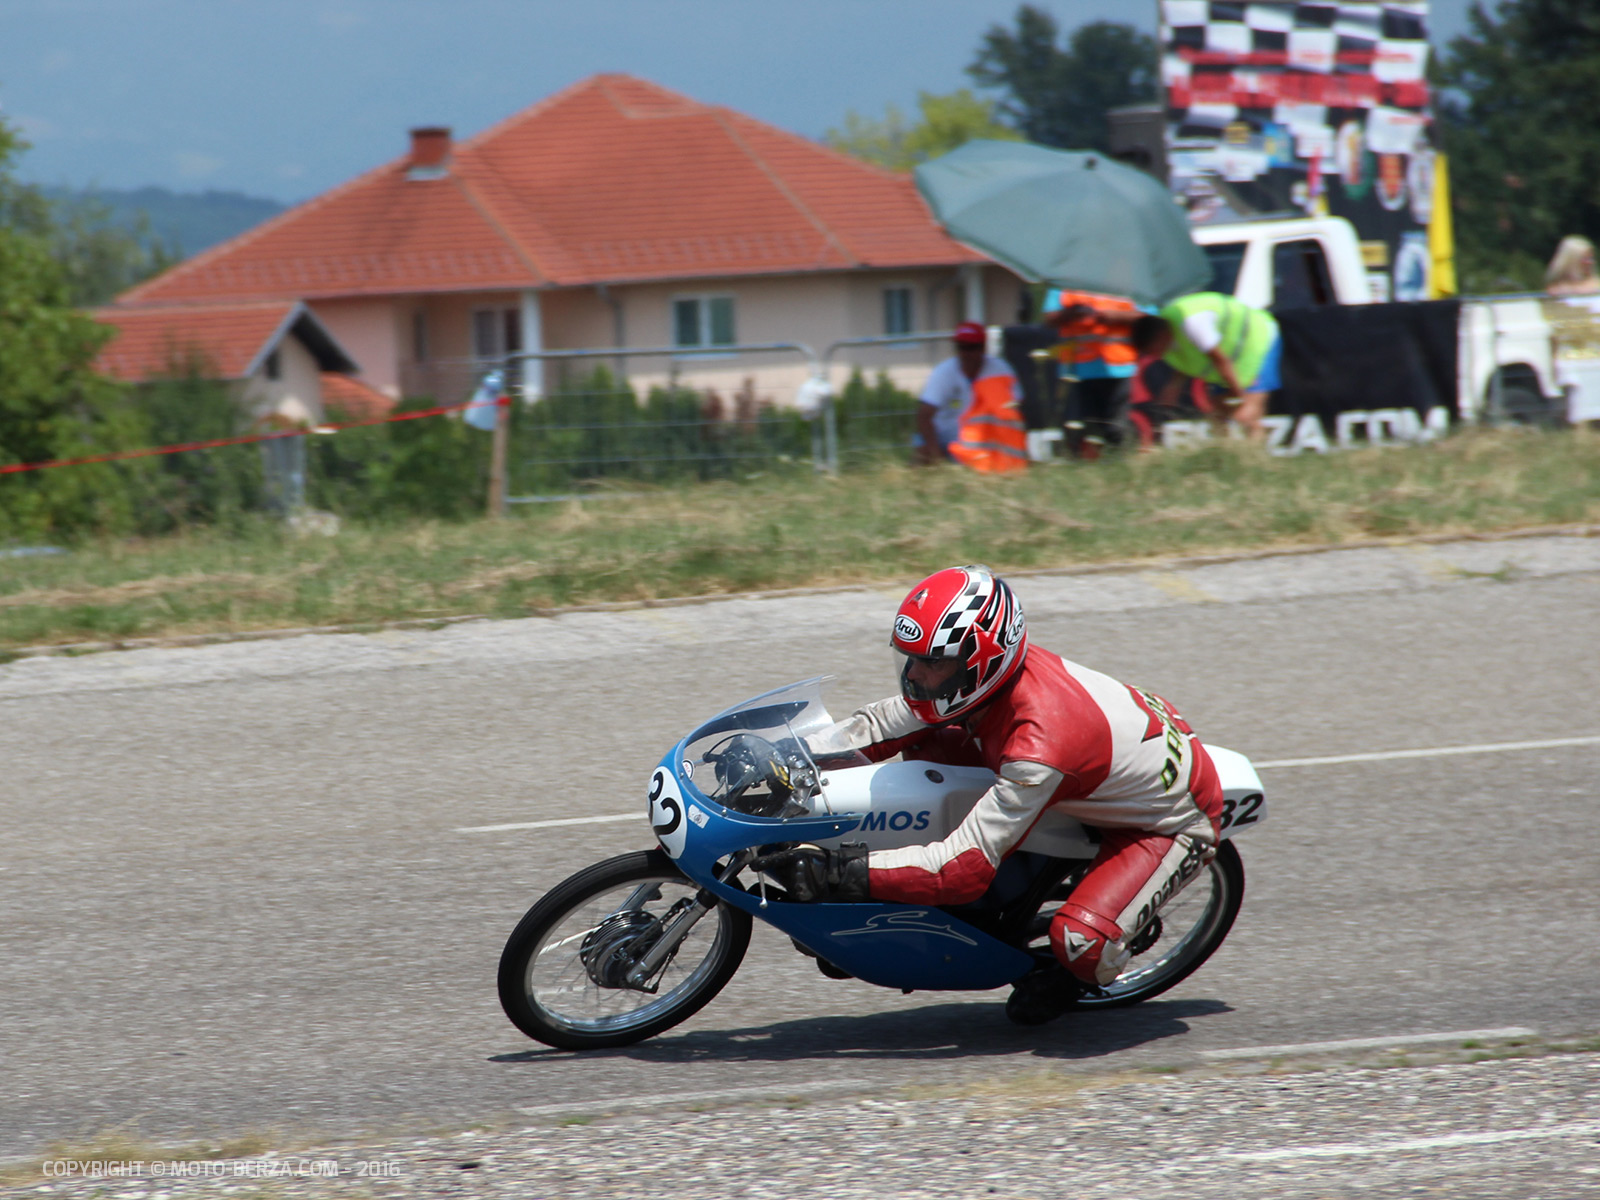 Moto trka Kraljevo 2016